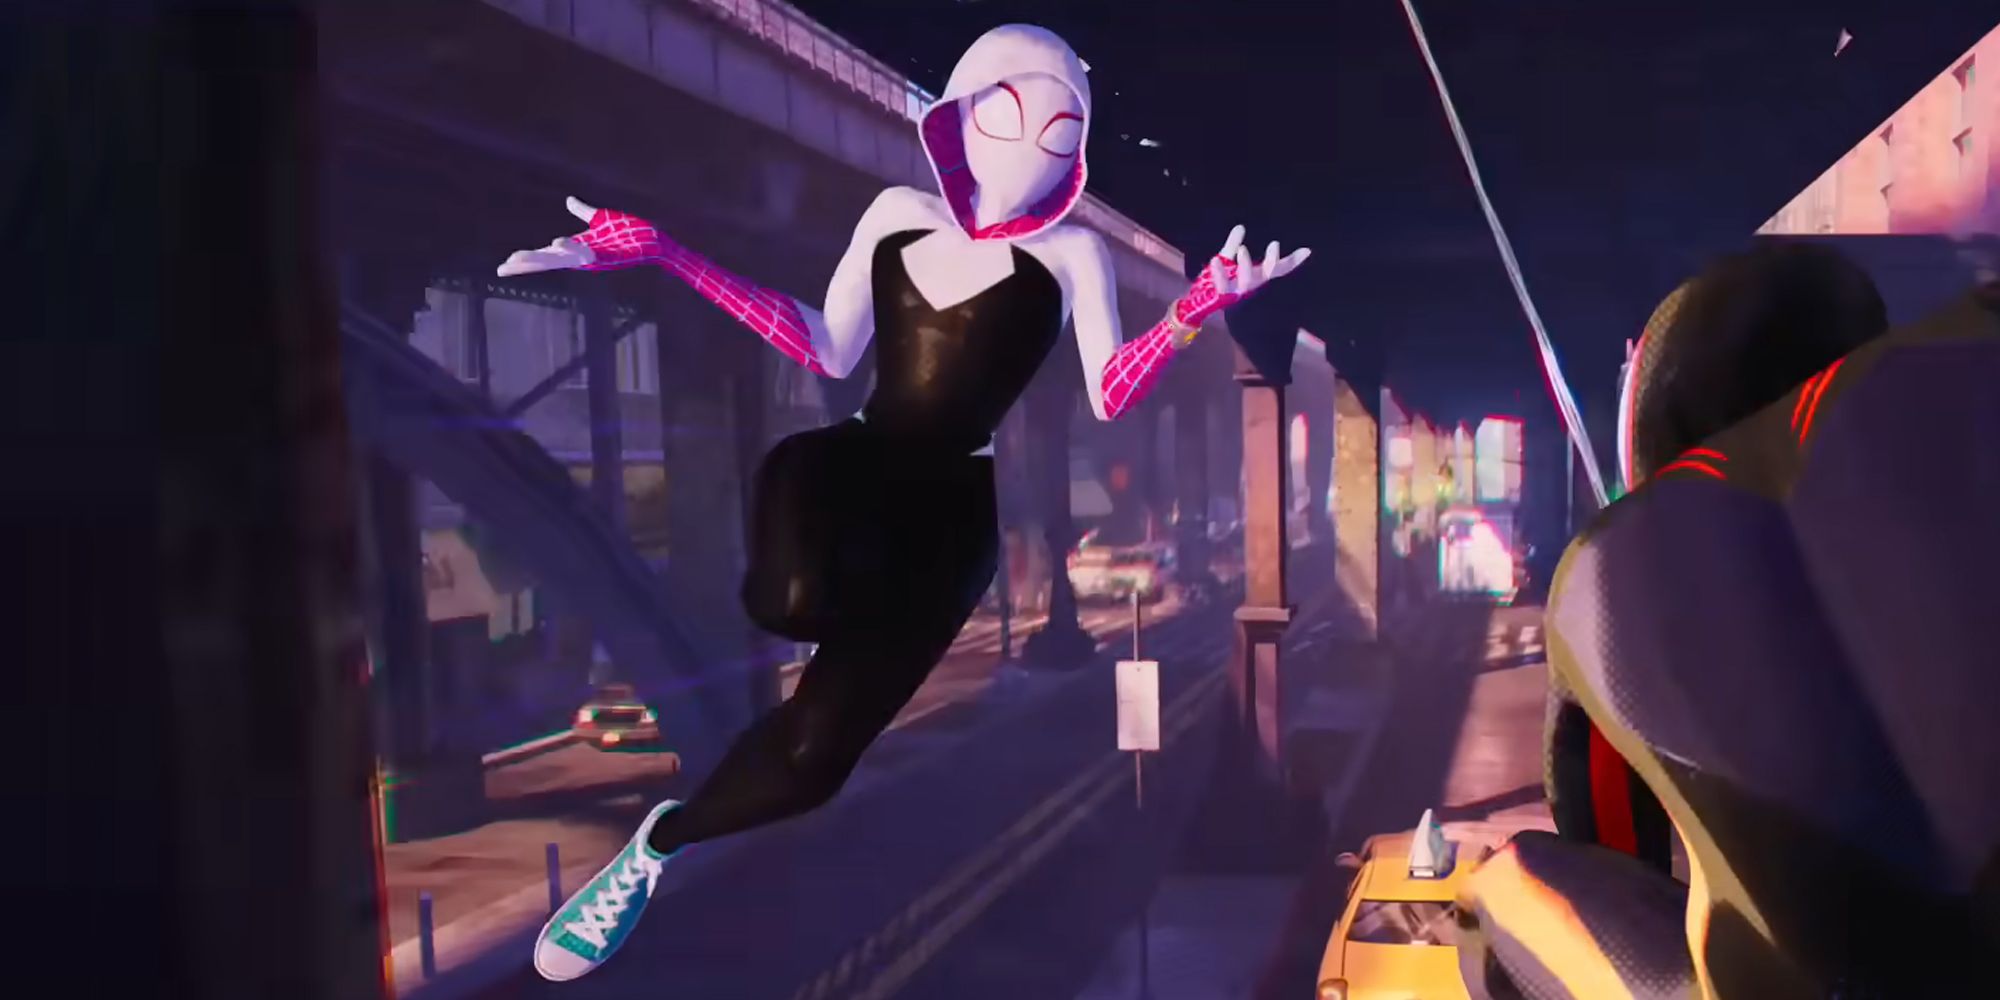 Gwen Stacy SpiderWoman de 'Spider-Man Across The Spider-Verse', se balancea en el aire encogiéndose de brazos